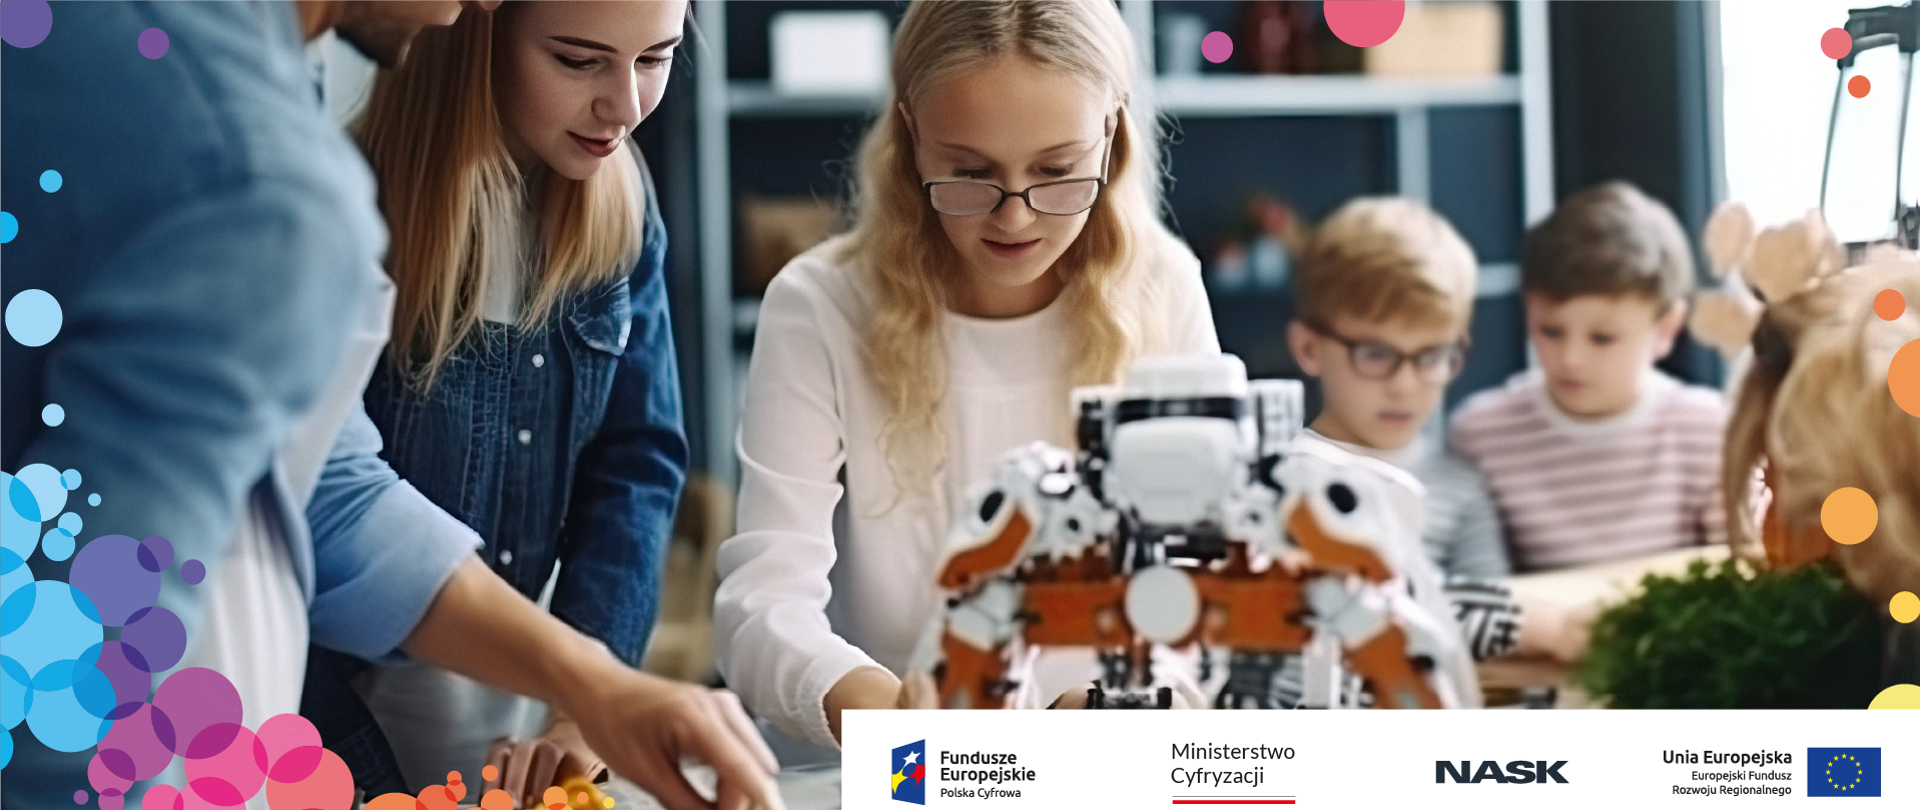 Grafika ze zdjęciem przedstawiającym grupę dzieci podczas nauki/zabawy z robotami. Na dole pasek z logotypami: Fundusze Europejskie, Ministerstwo Cyfryzacji, NASK, Unia Europejska.